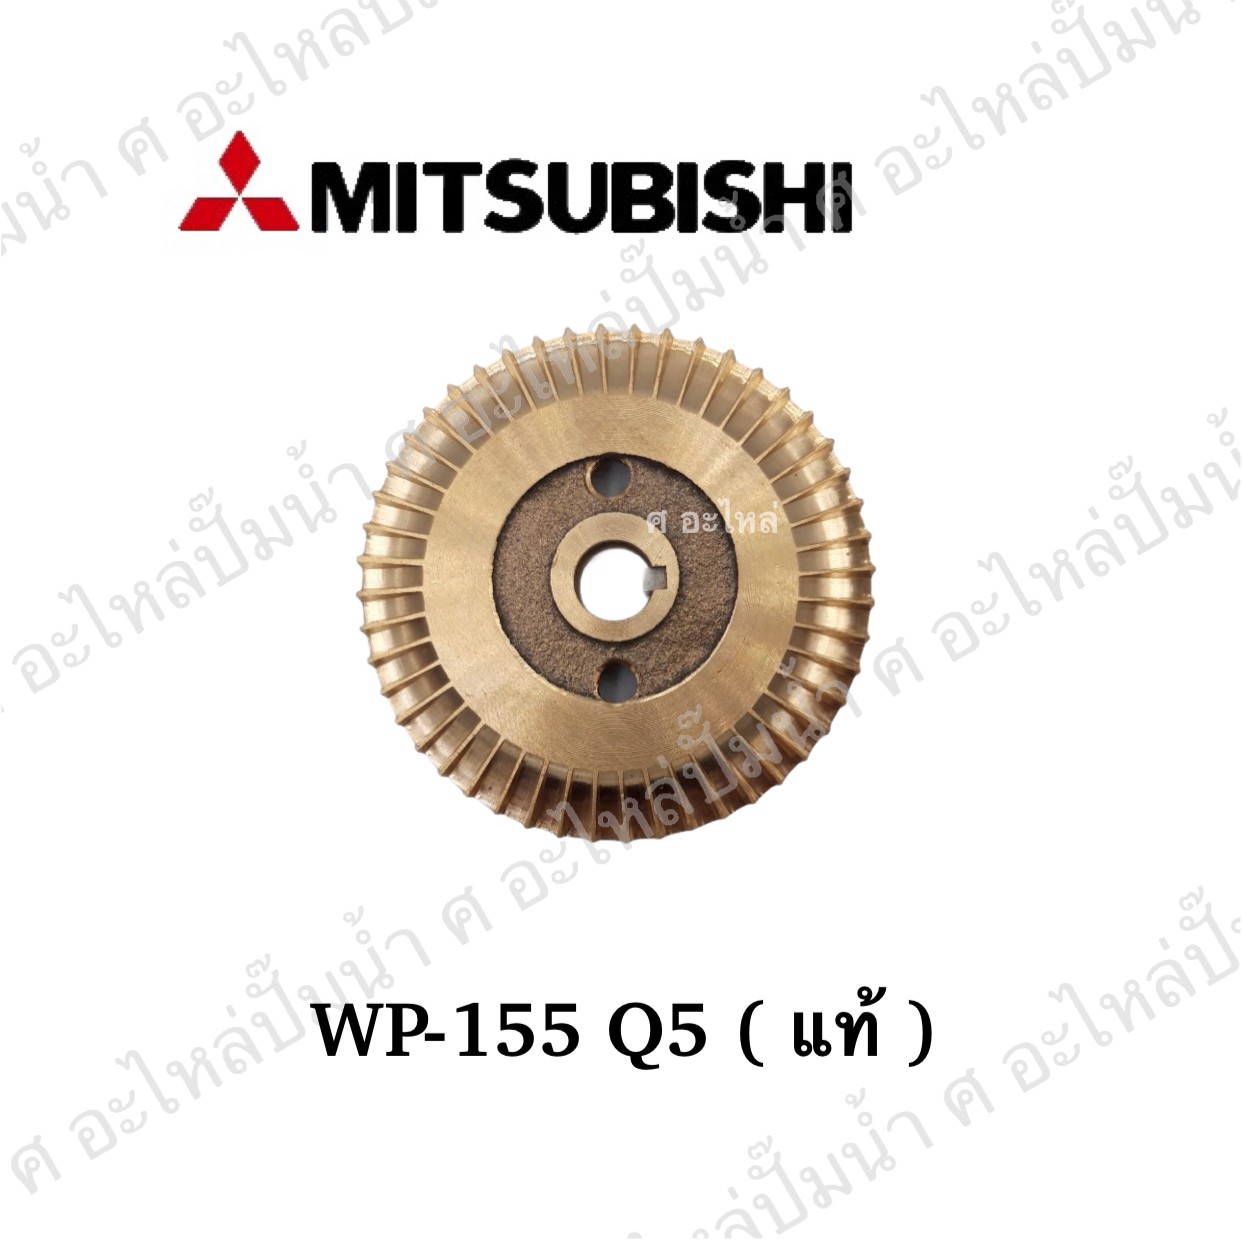 ใบพัดทองเหลืองMitsubishi WP-155Q5 แท้** ใช้กัปั๊มน้ำอัตโนมัติ